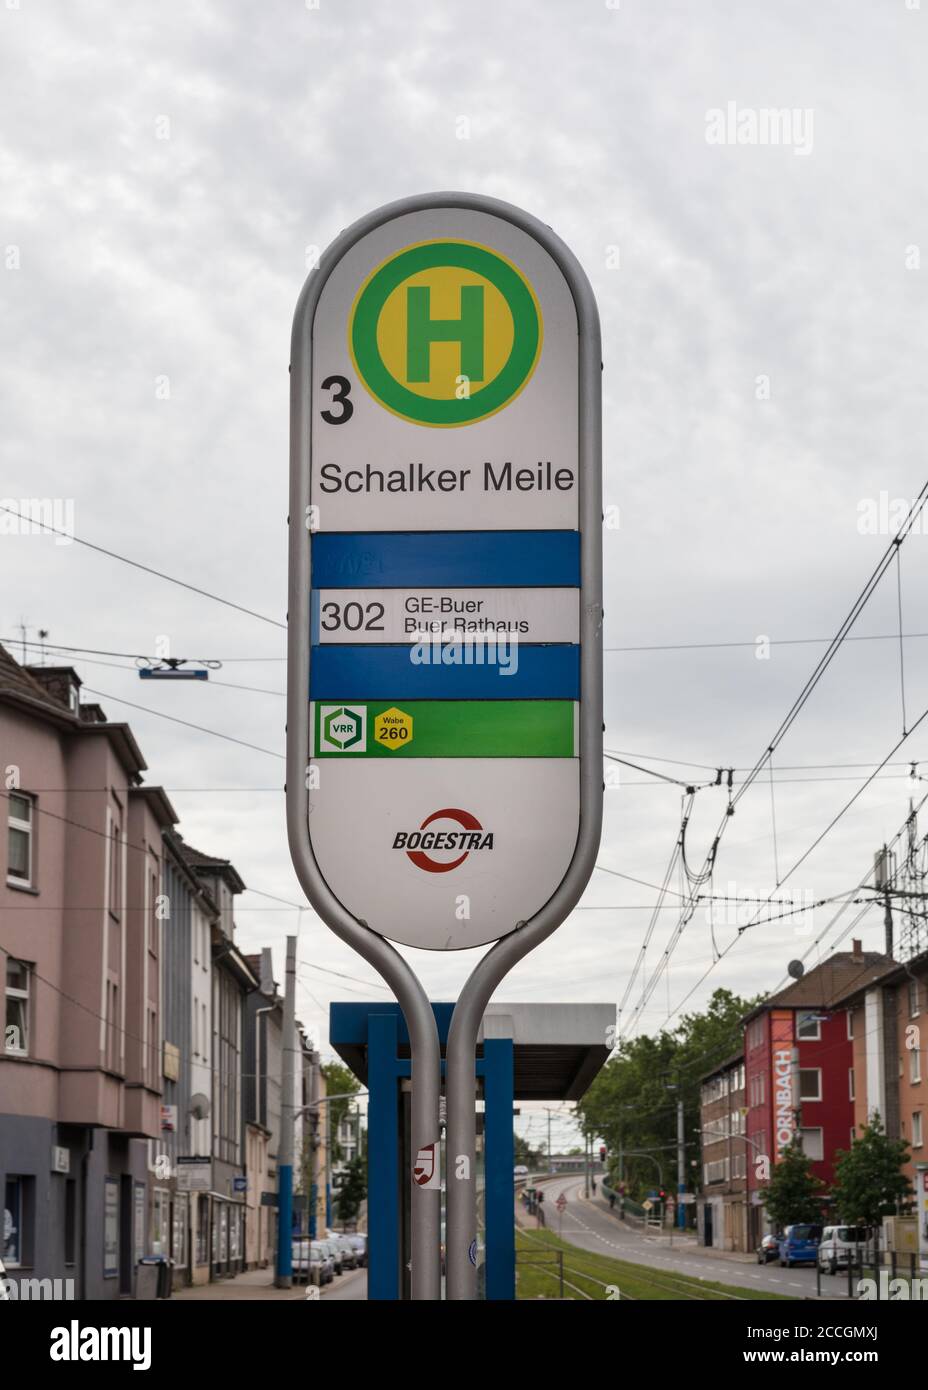 Arrêt de tramway Schalker Meile, zone des fans du club de football FC Schalke 04, à Gelsenkirchen, Rhénanie-du-Nord-Westphalie, Allemagne Banque D'Images